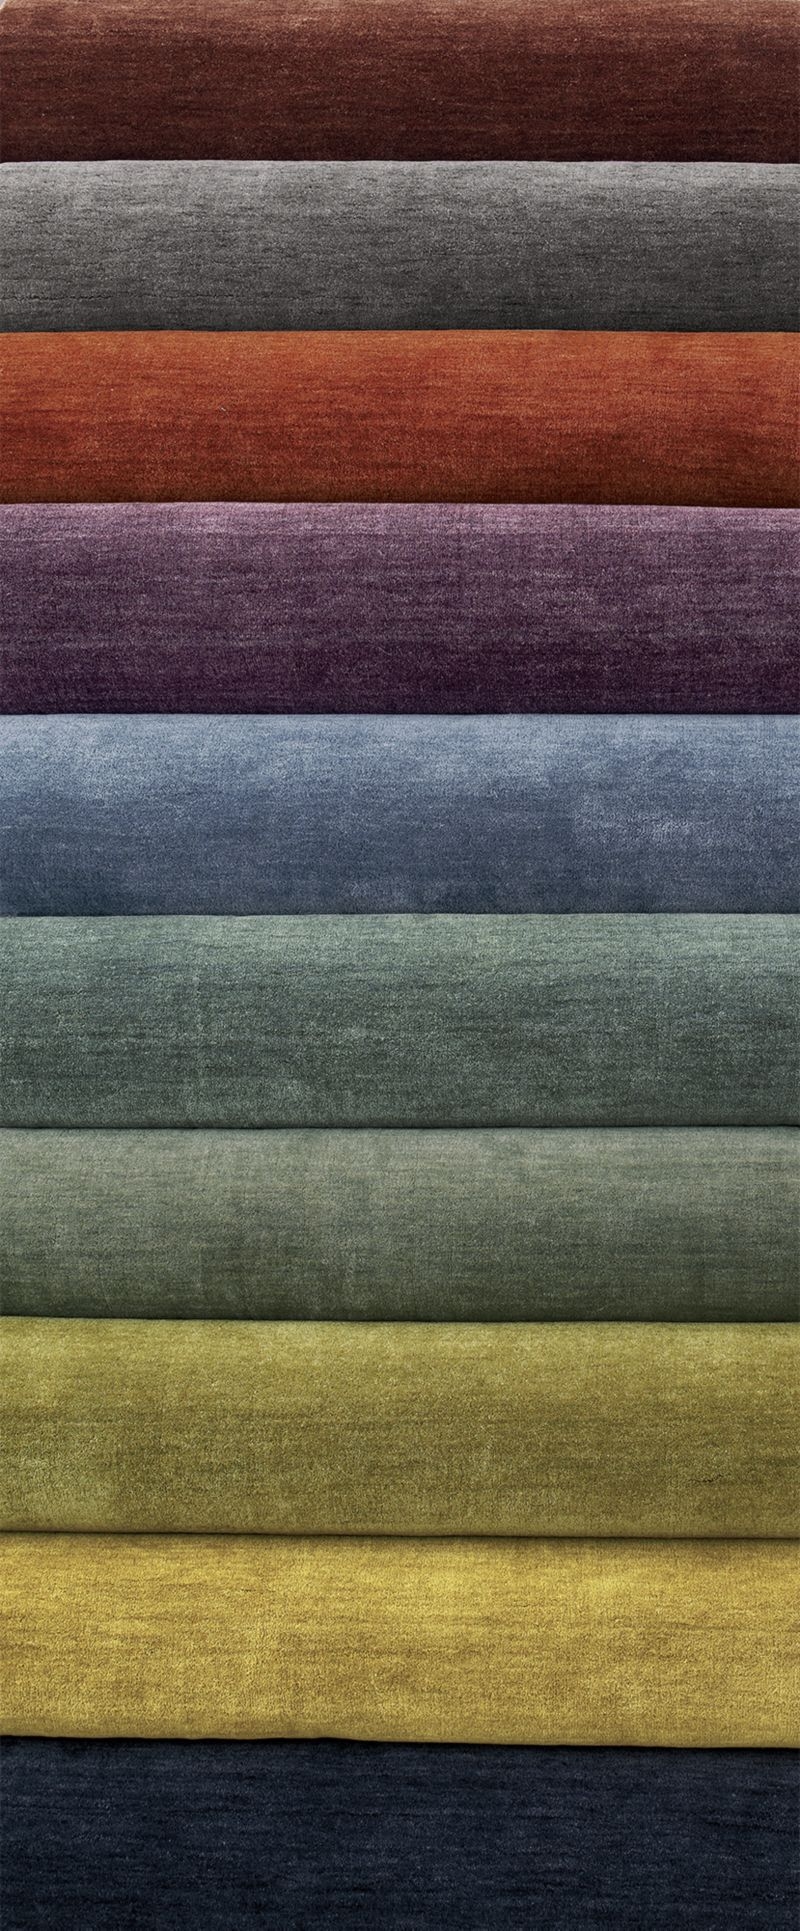 Baxter Grey Wool Area Rug 8'x10' - Image 3